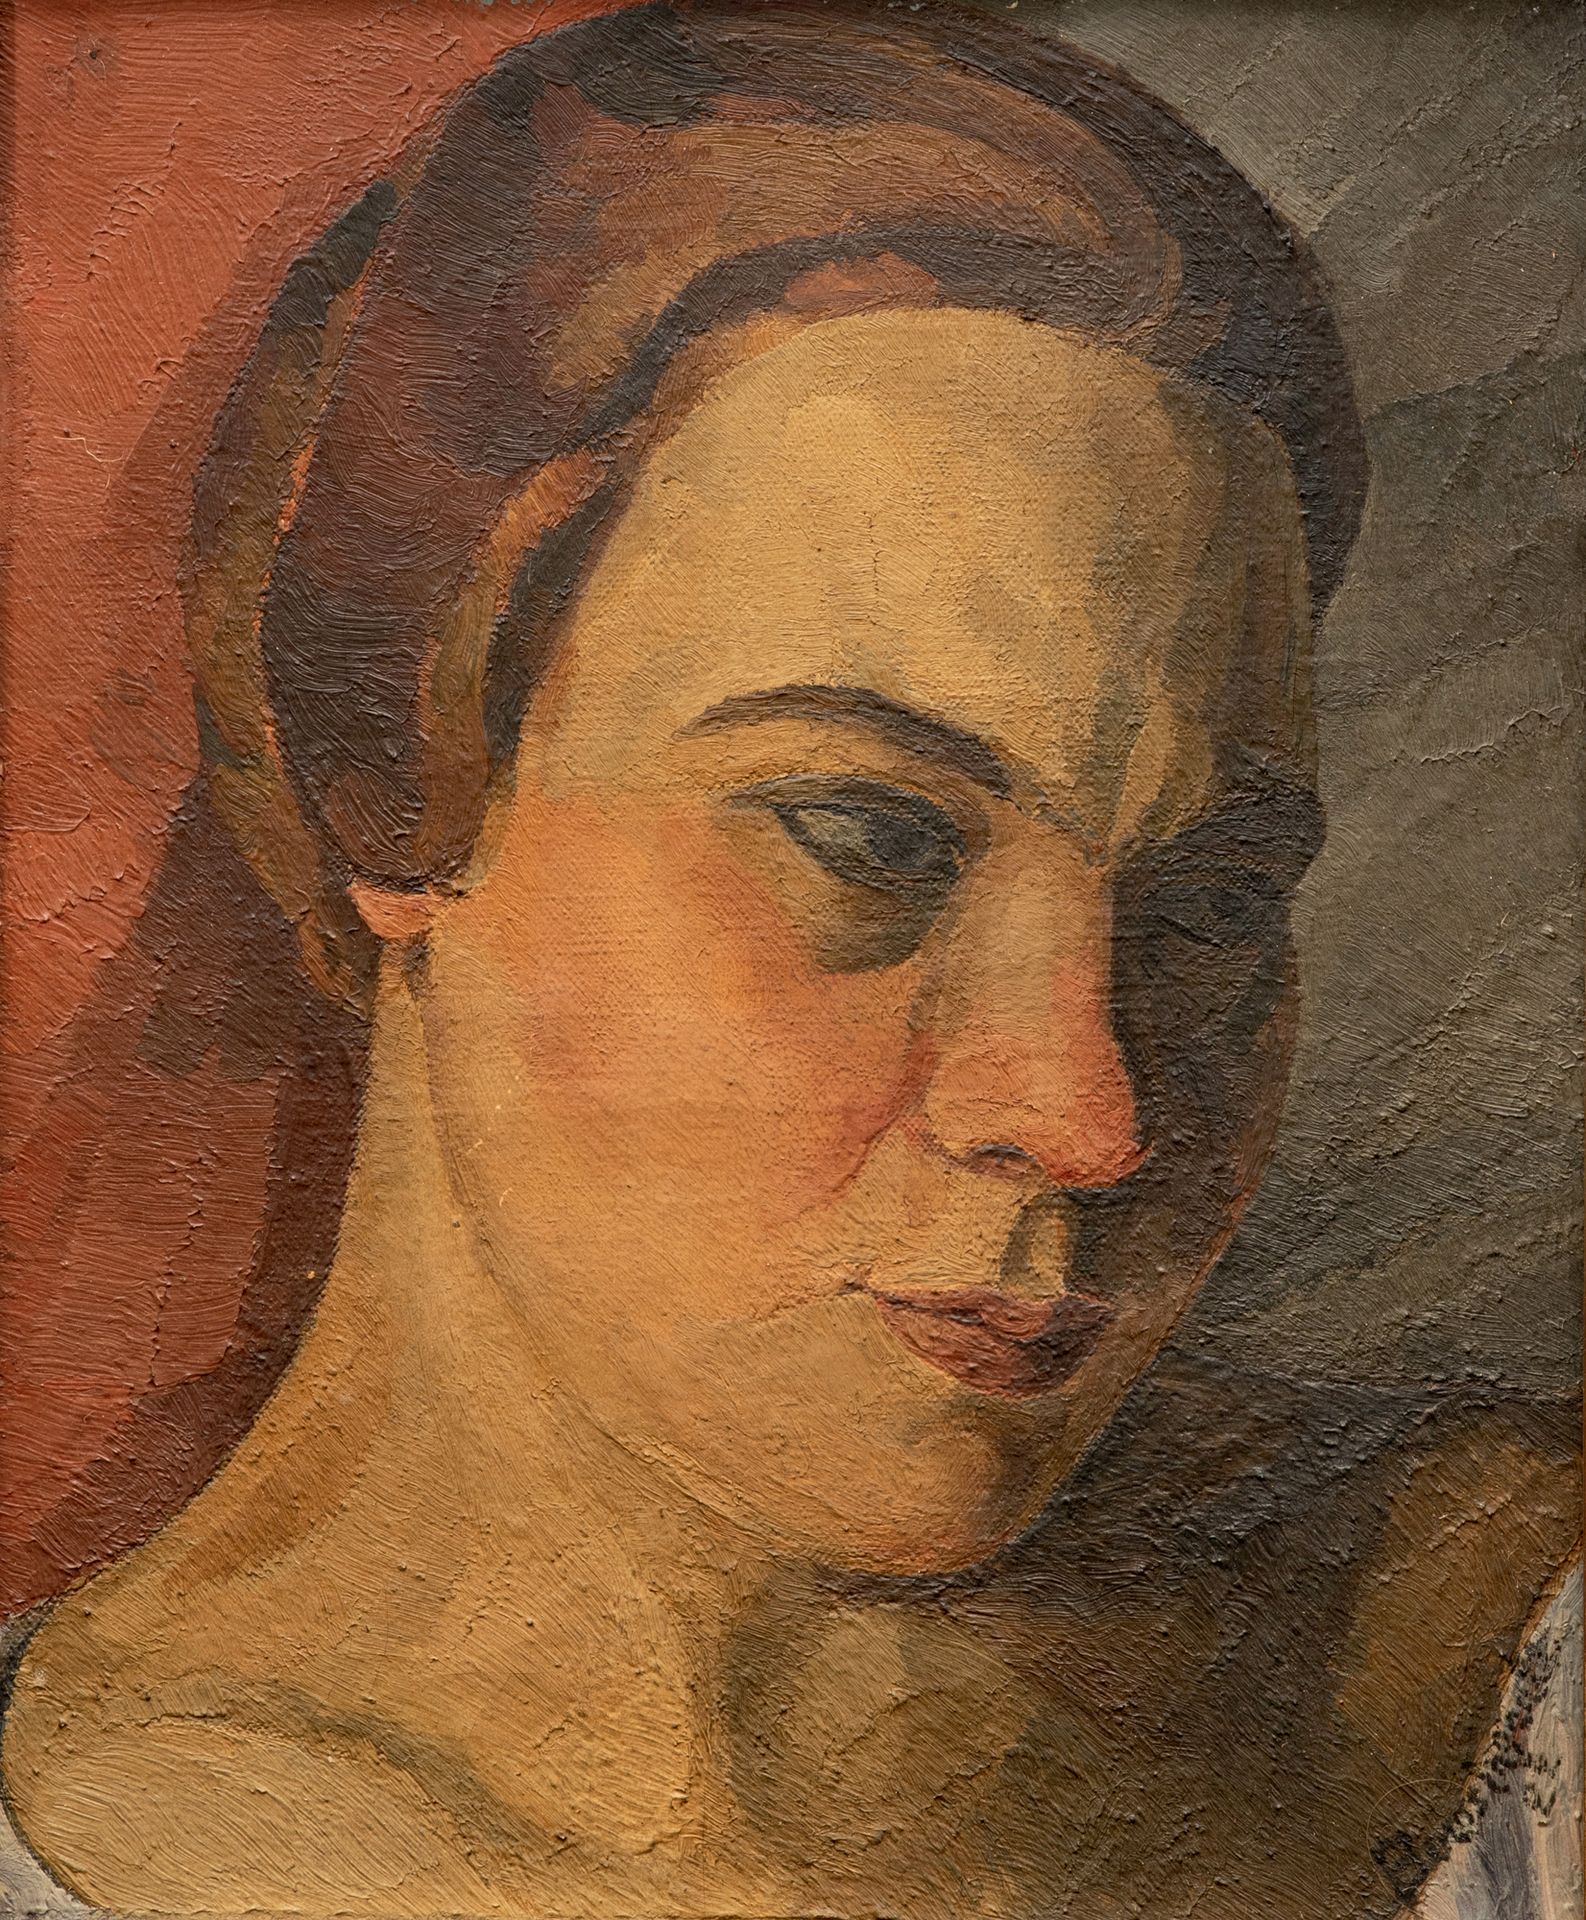 Jean-Louis BOUSSINGAULT (1883-1943) Retrato de mujer,1927
Óleo sobre lienzo, fir&hellip;